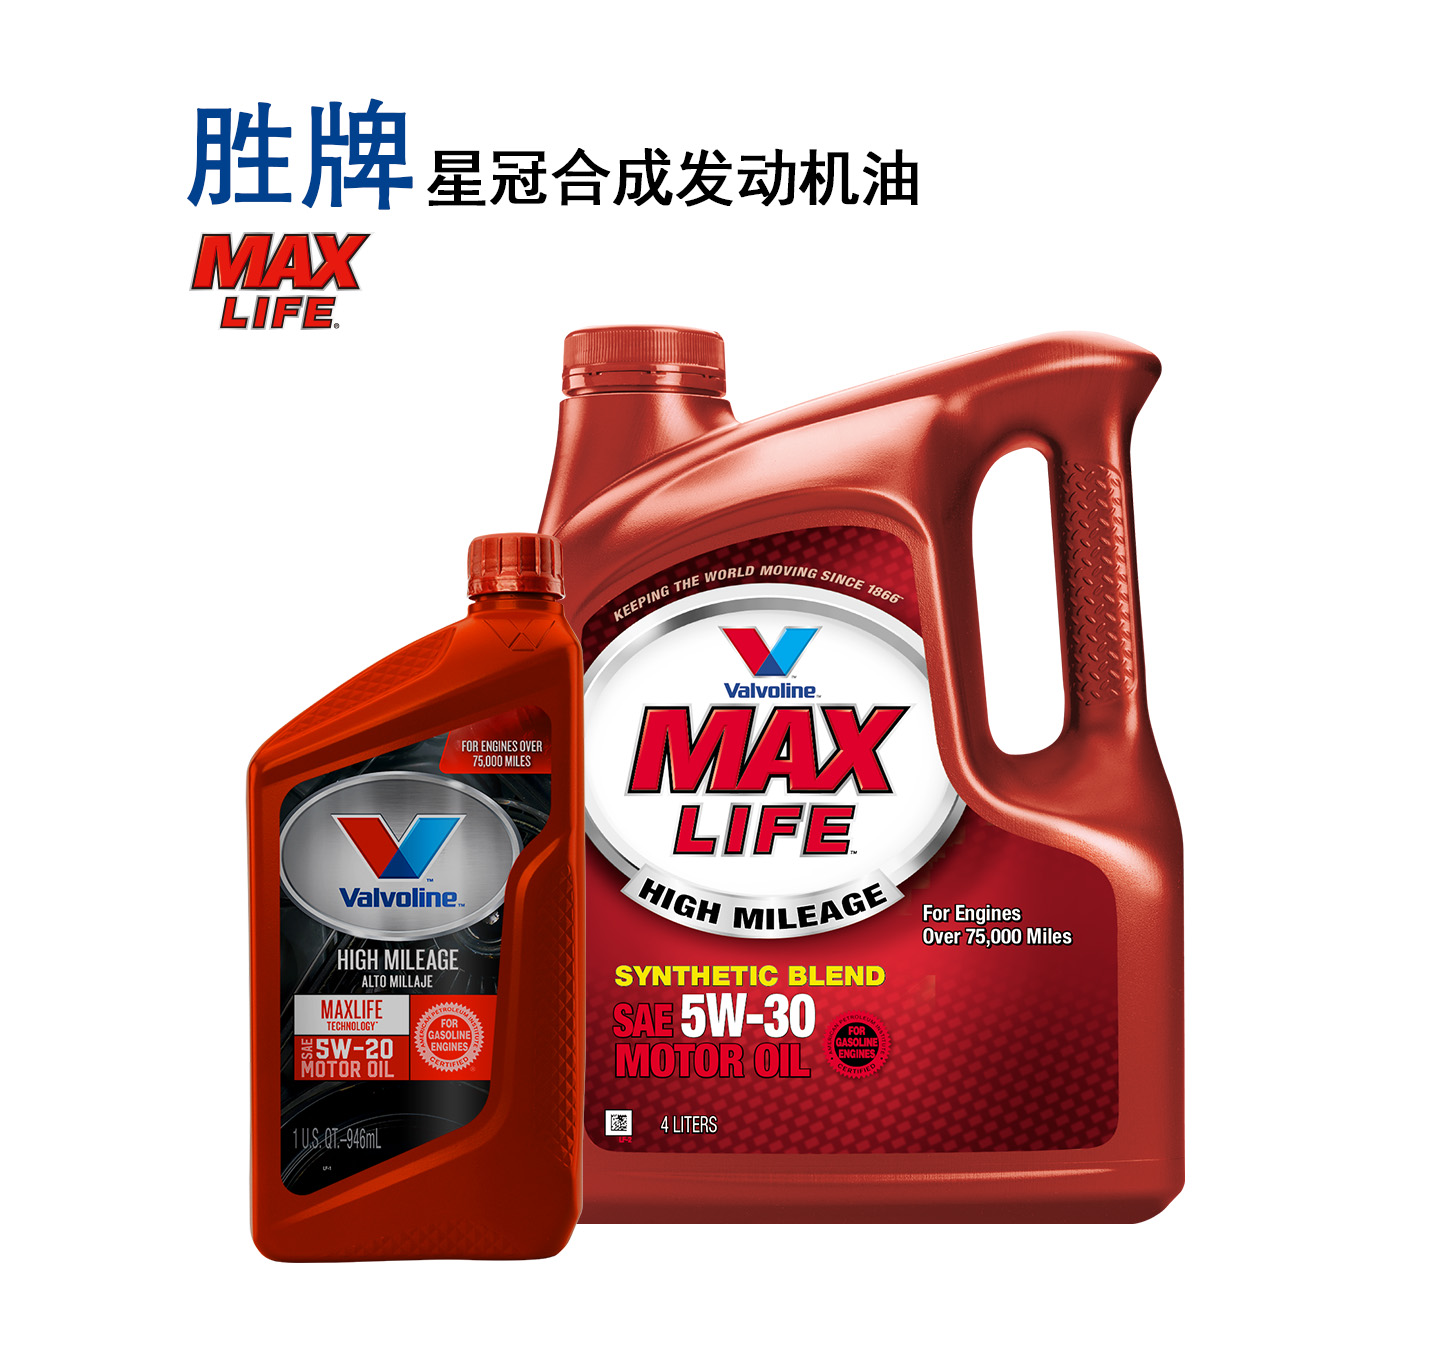 广州 胜牌机油 星冠 高里程 MAXLIFE 合成发动机油 4L 汽车机油 总代直销 量大从优